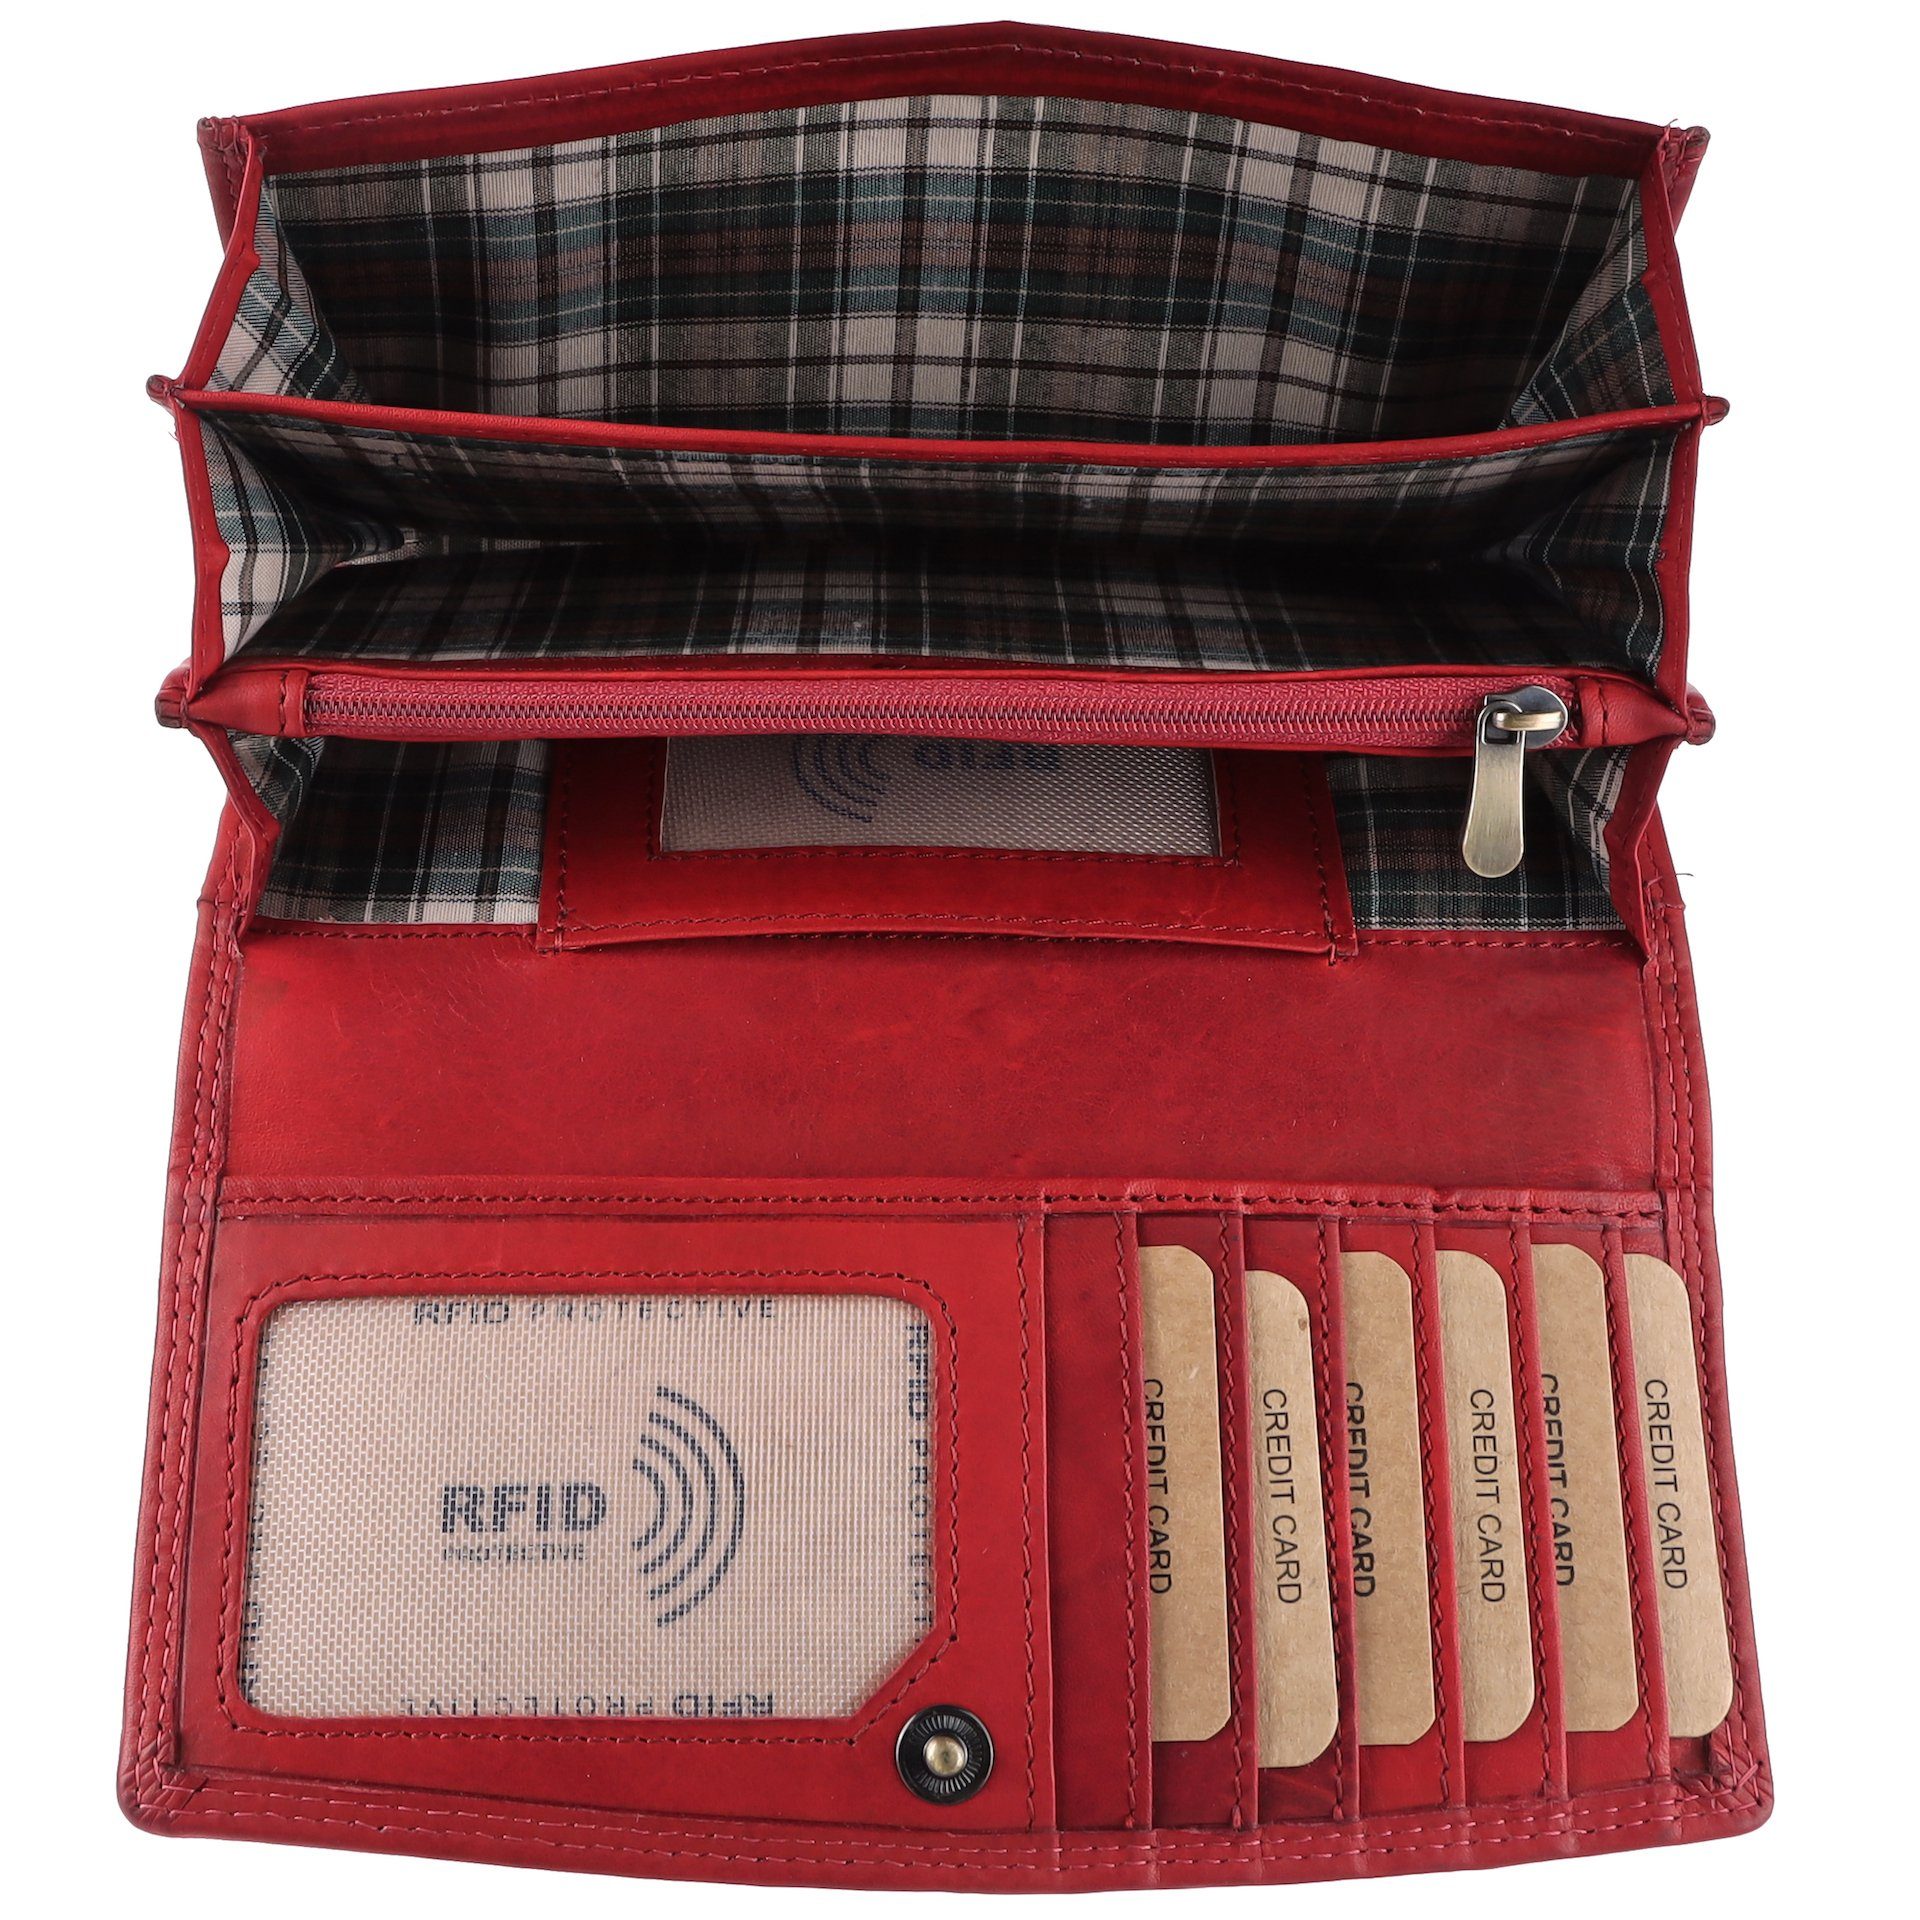 Groß RFID Benthill Münzfach vielen Kartenfächer Rot Leder Geldbörse RFID-Schutz Portemonnaie, Echt Reißverschlussfach Damen Kartenfächer XXL